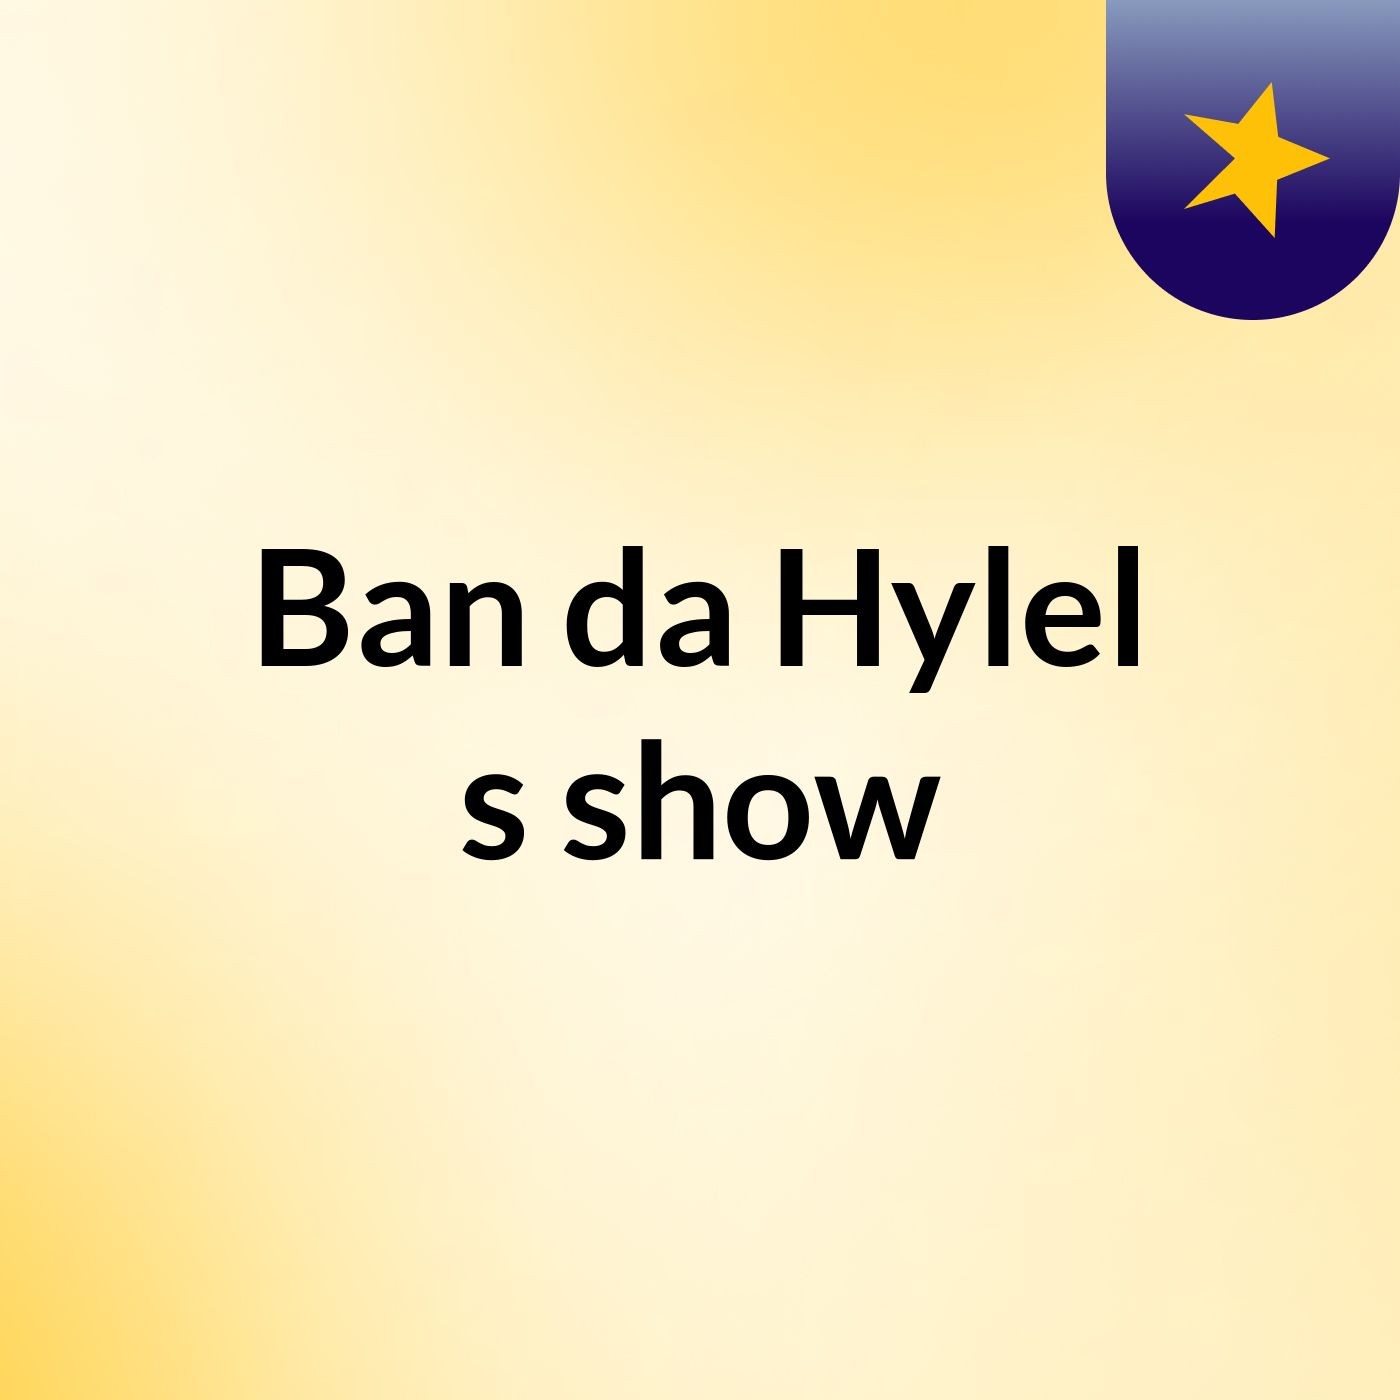 Ban da Hylel's show